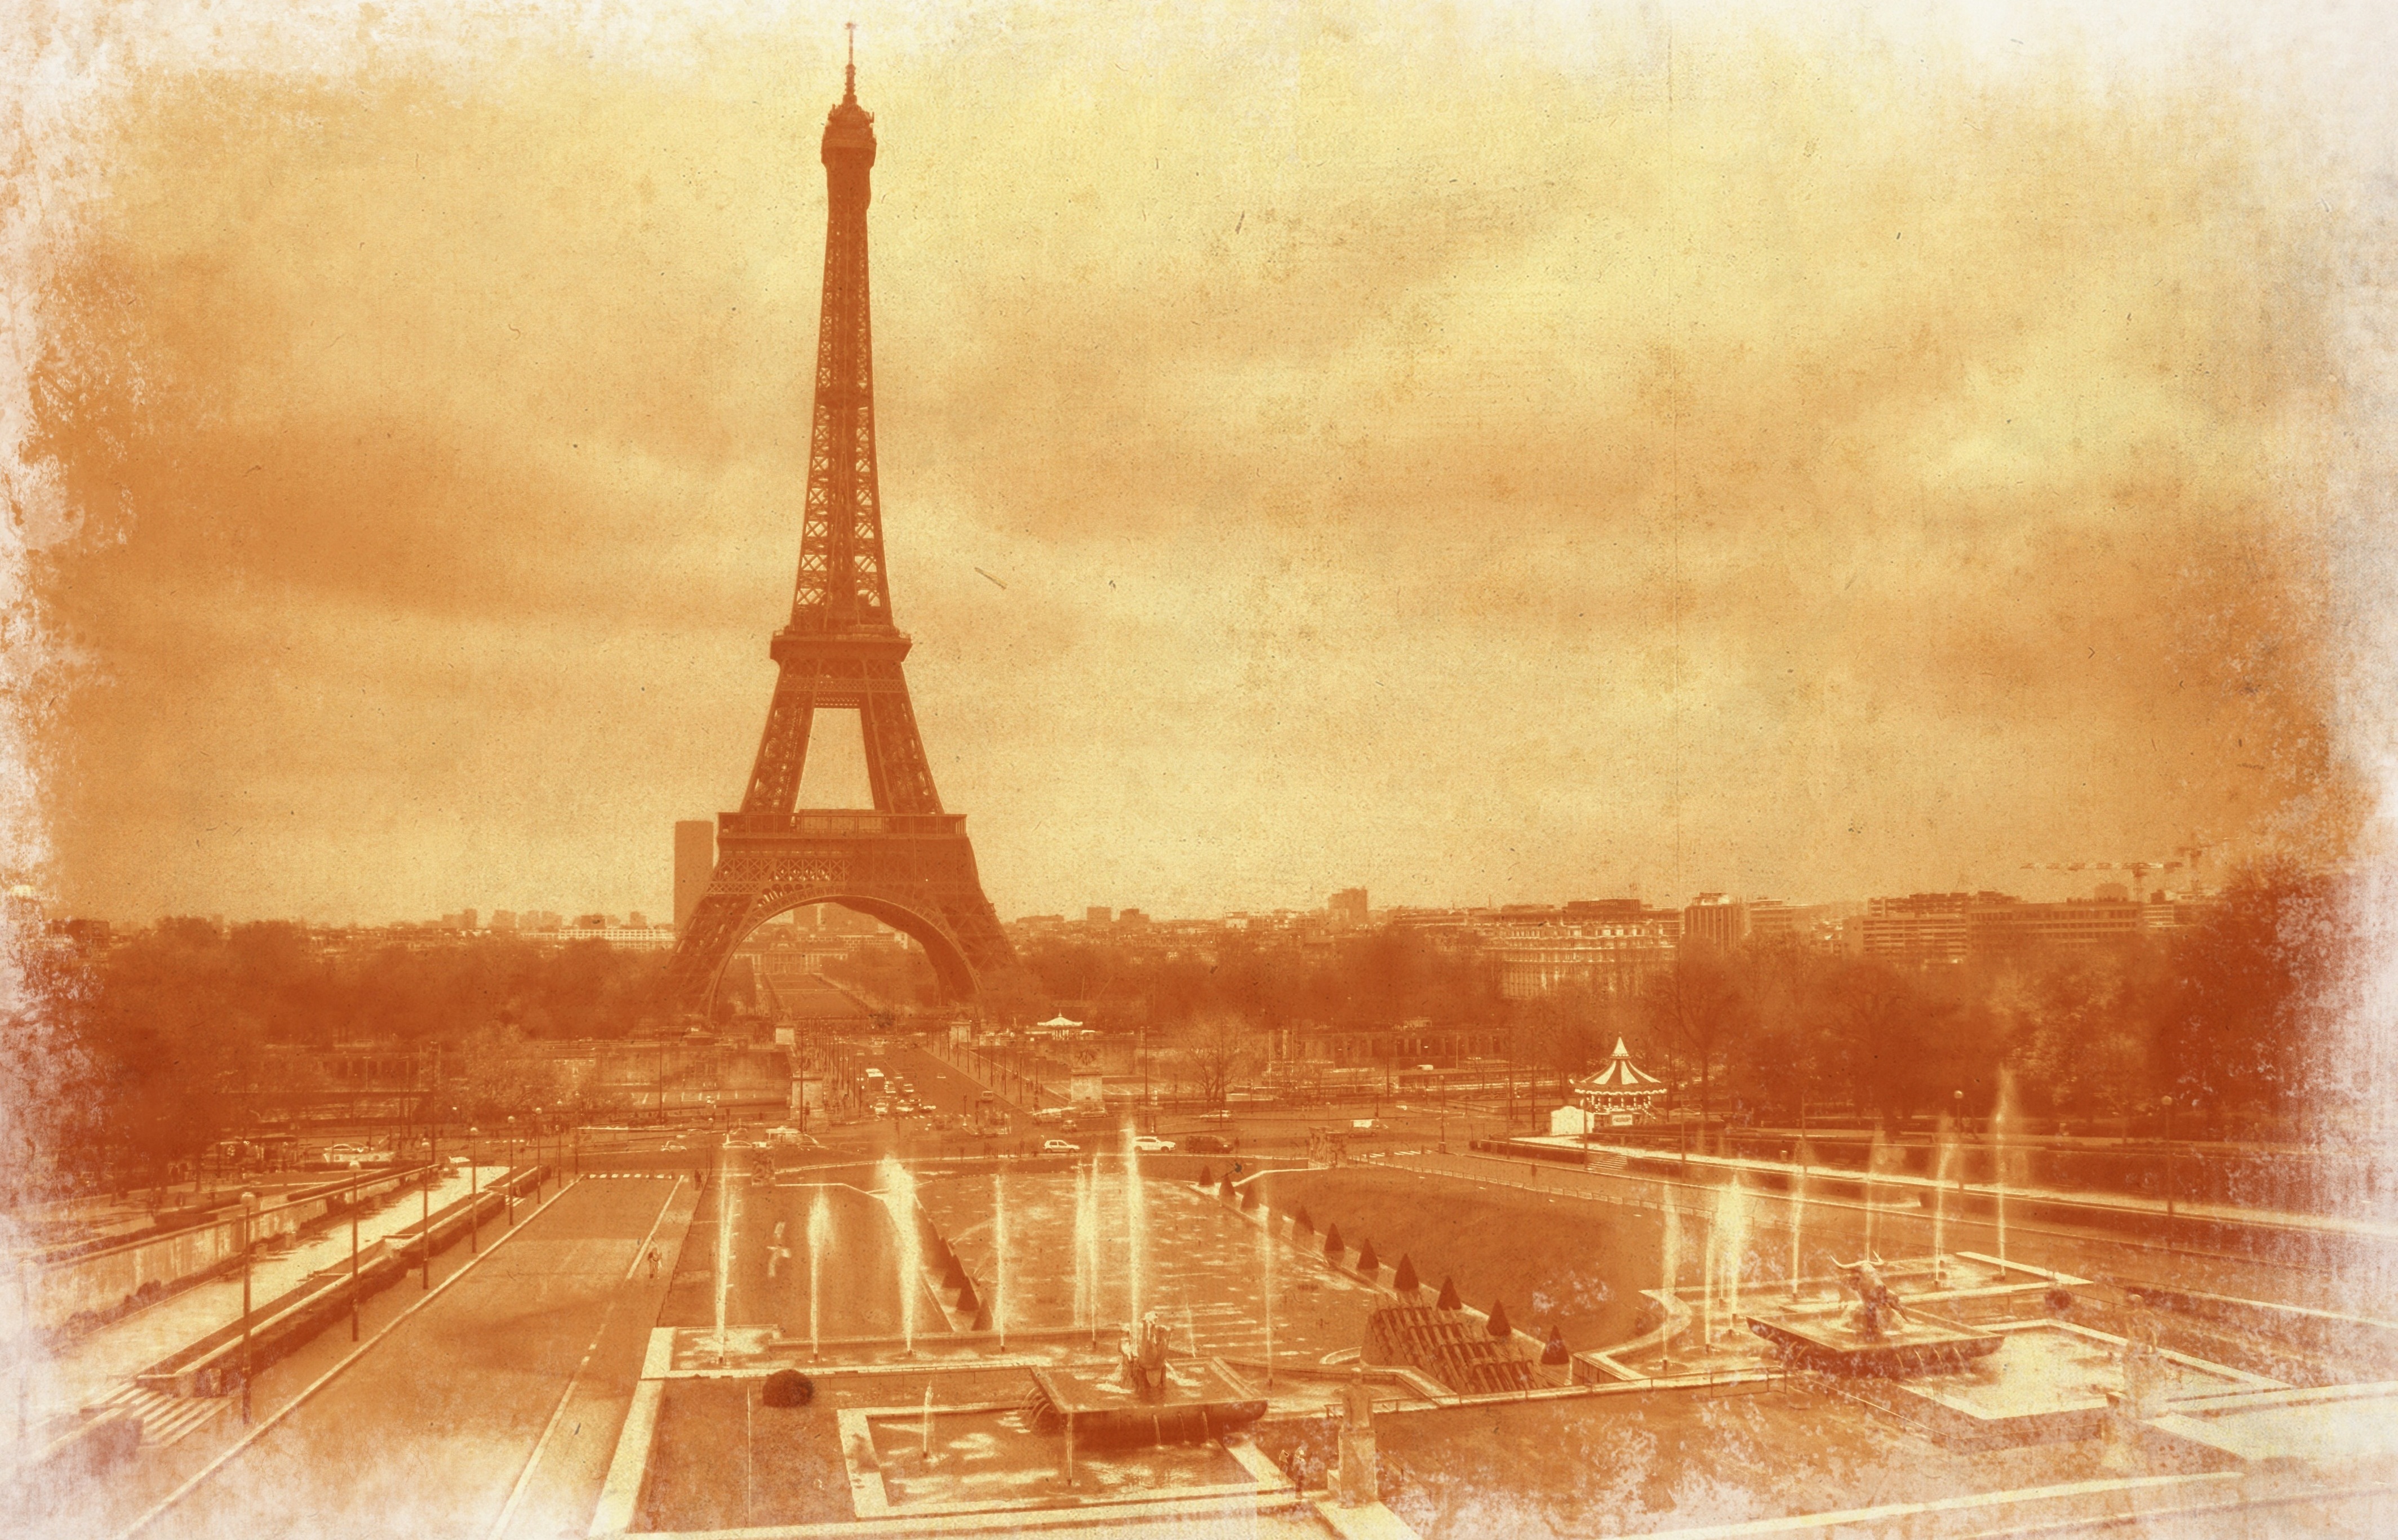 Free Download Wallpaper Eiffel Tower Paris Frankreich In Vintage